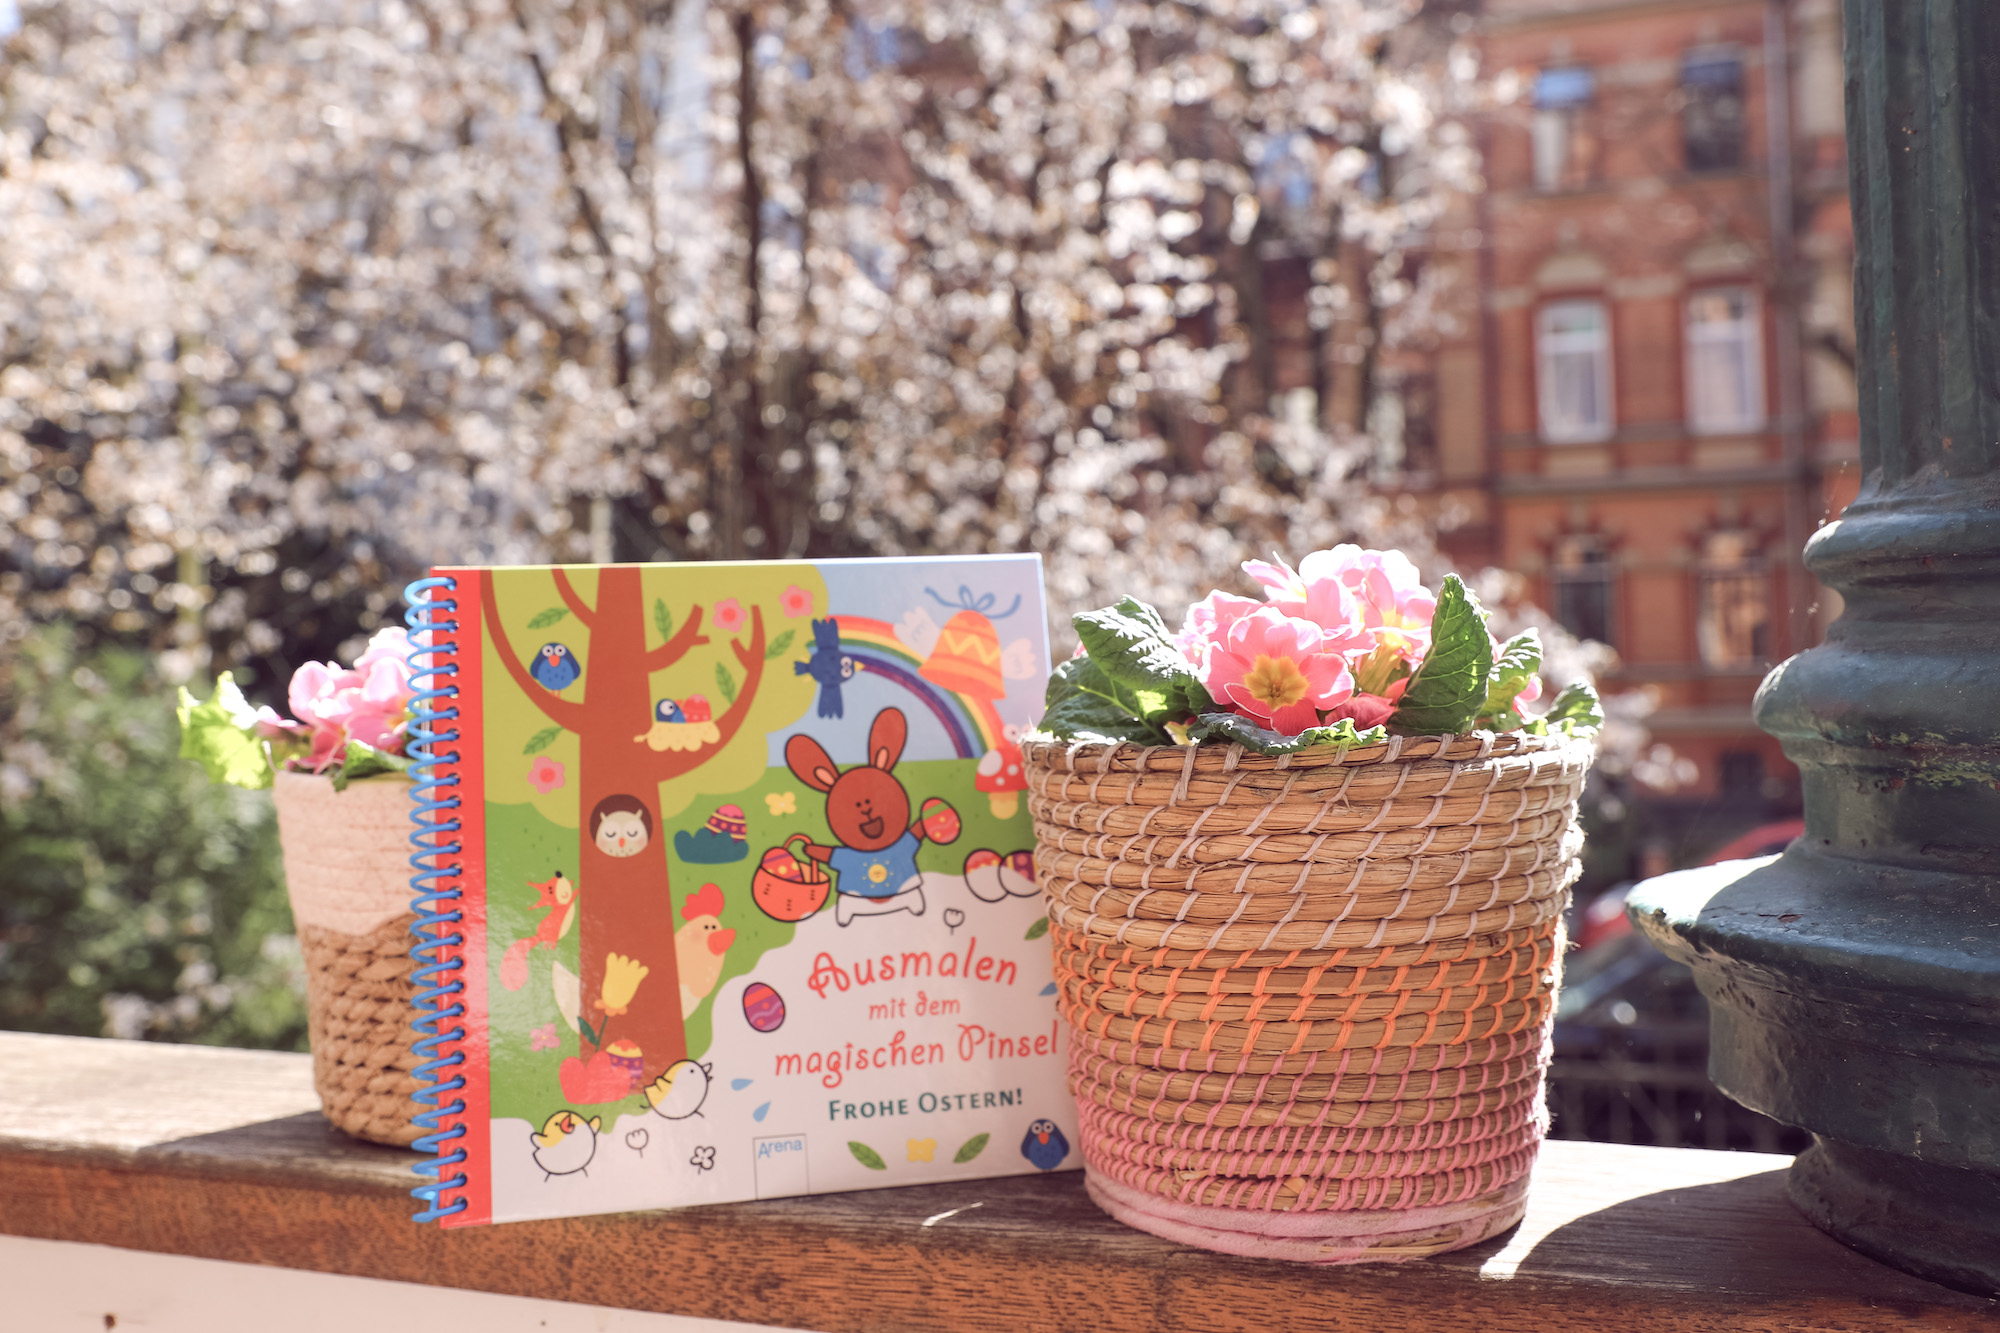 Ausmalen mit dem magischen Pinsel – Frohe Ostern!